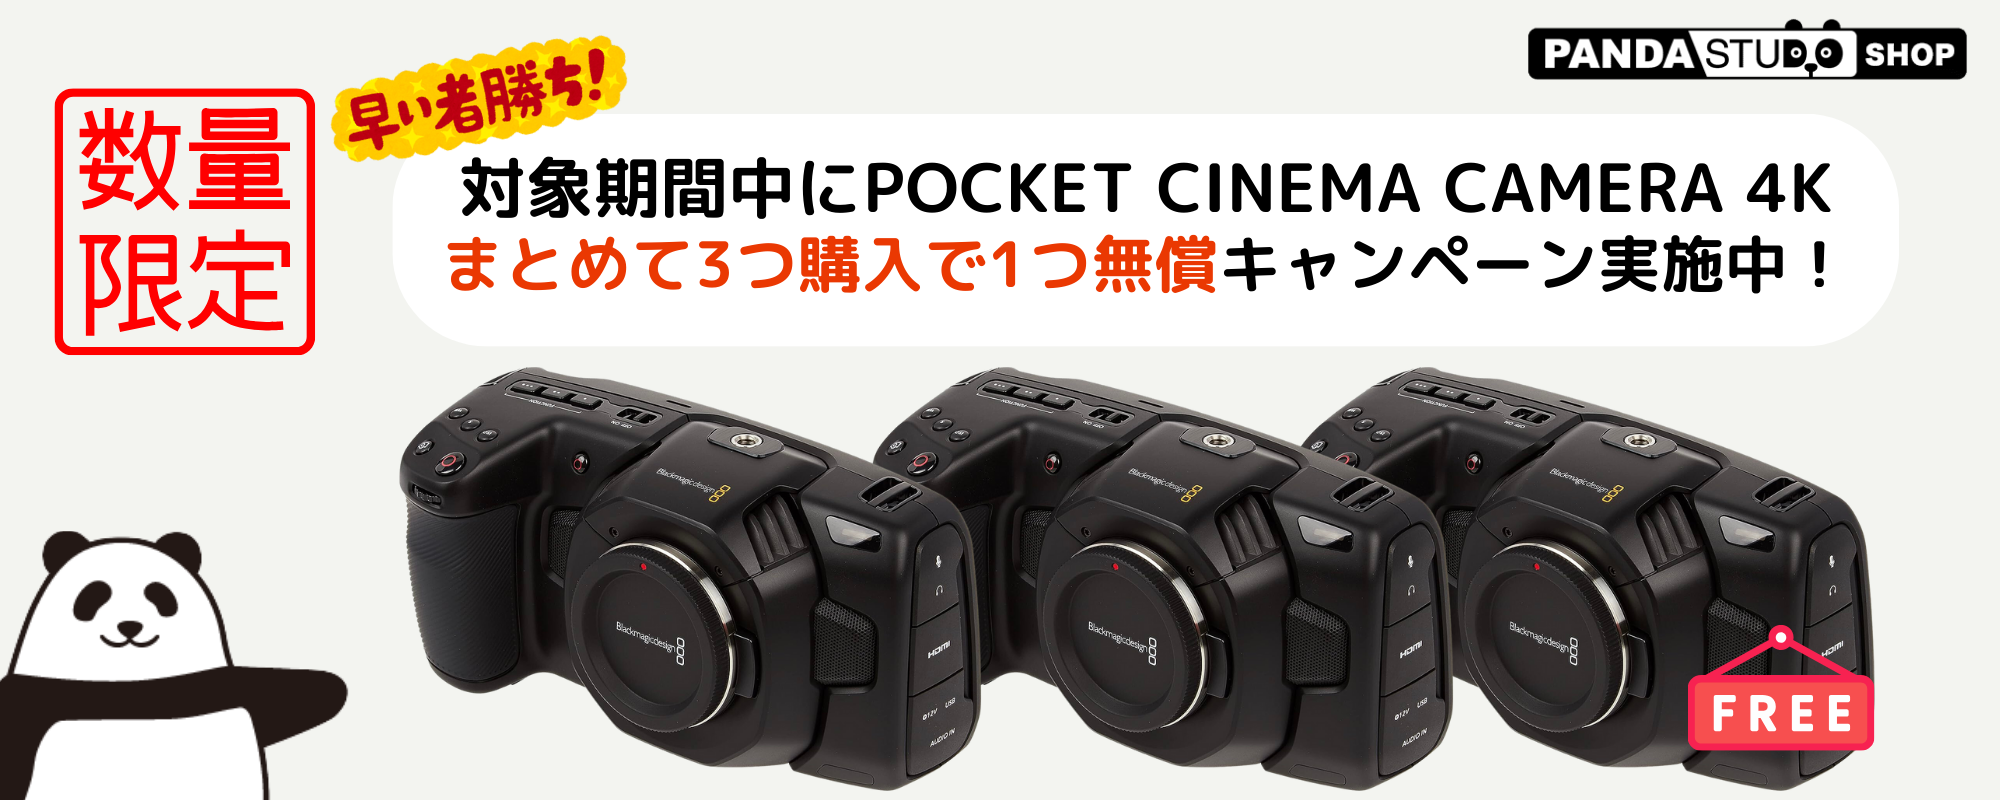 対象期間にPocket Cinema Camera 4K 3台購入すると1台無料になるキャンペーンを実施中！